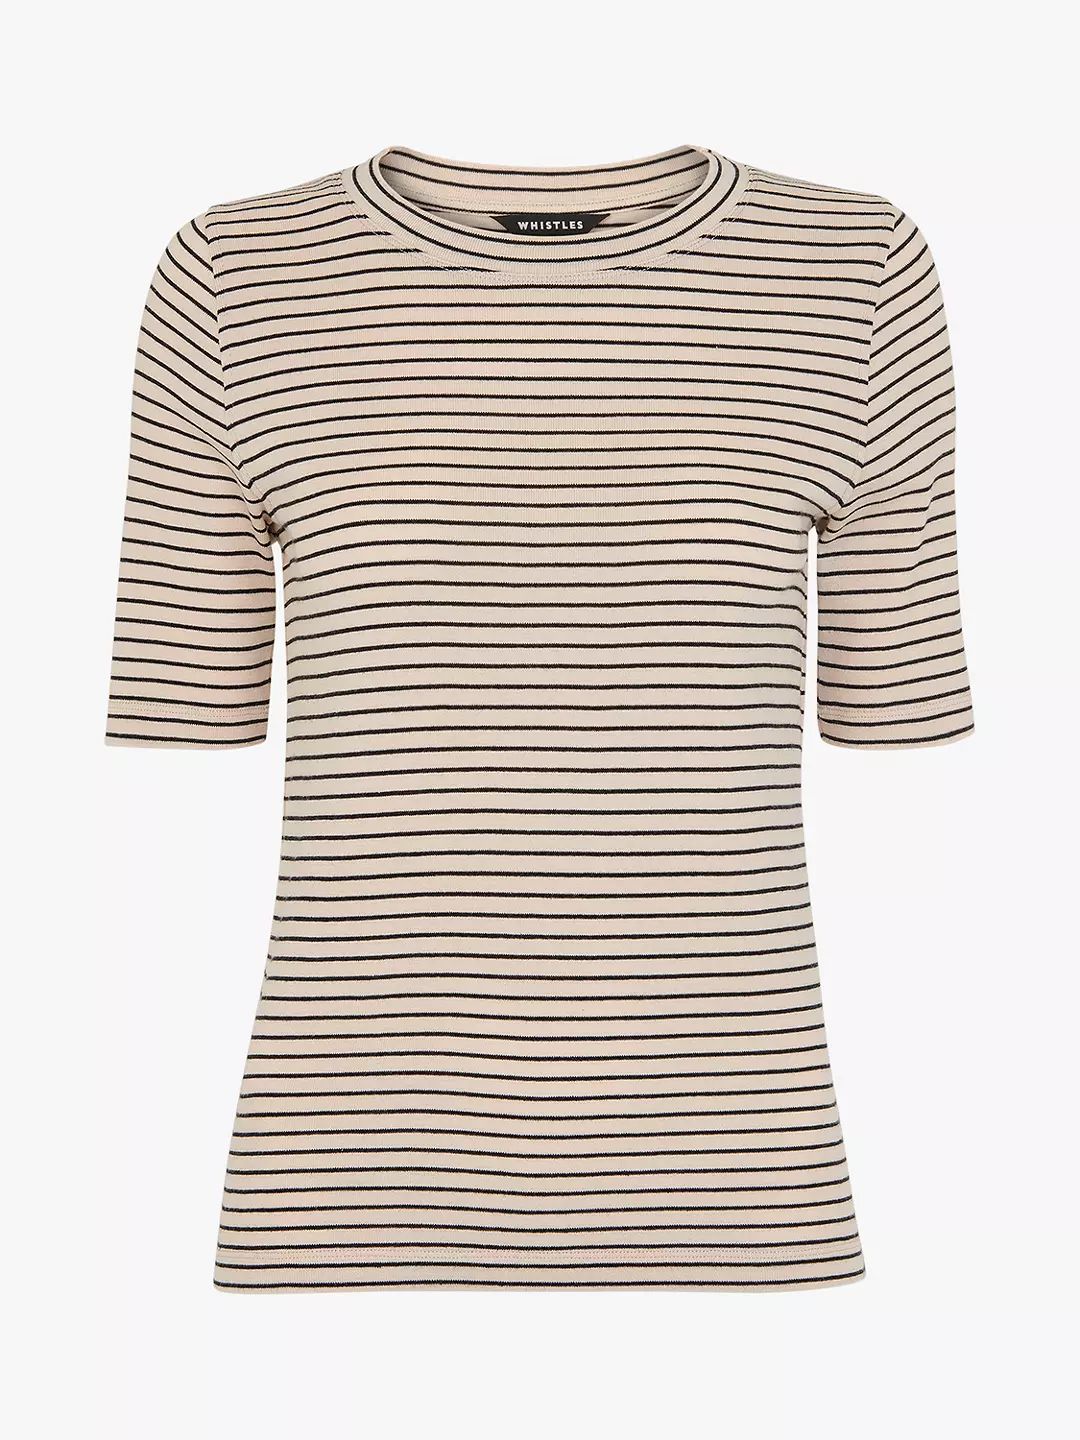 Whistles Slim Stripe T-Shirt, Navy/Multi | John Lewis (UK)